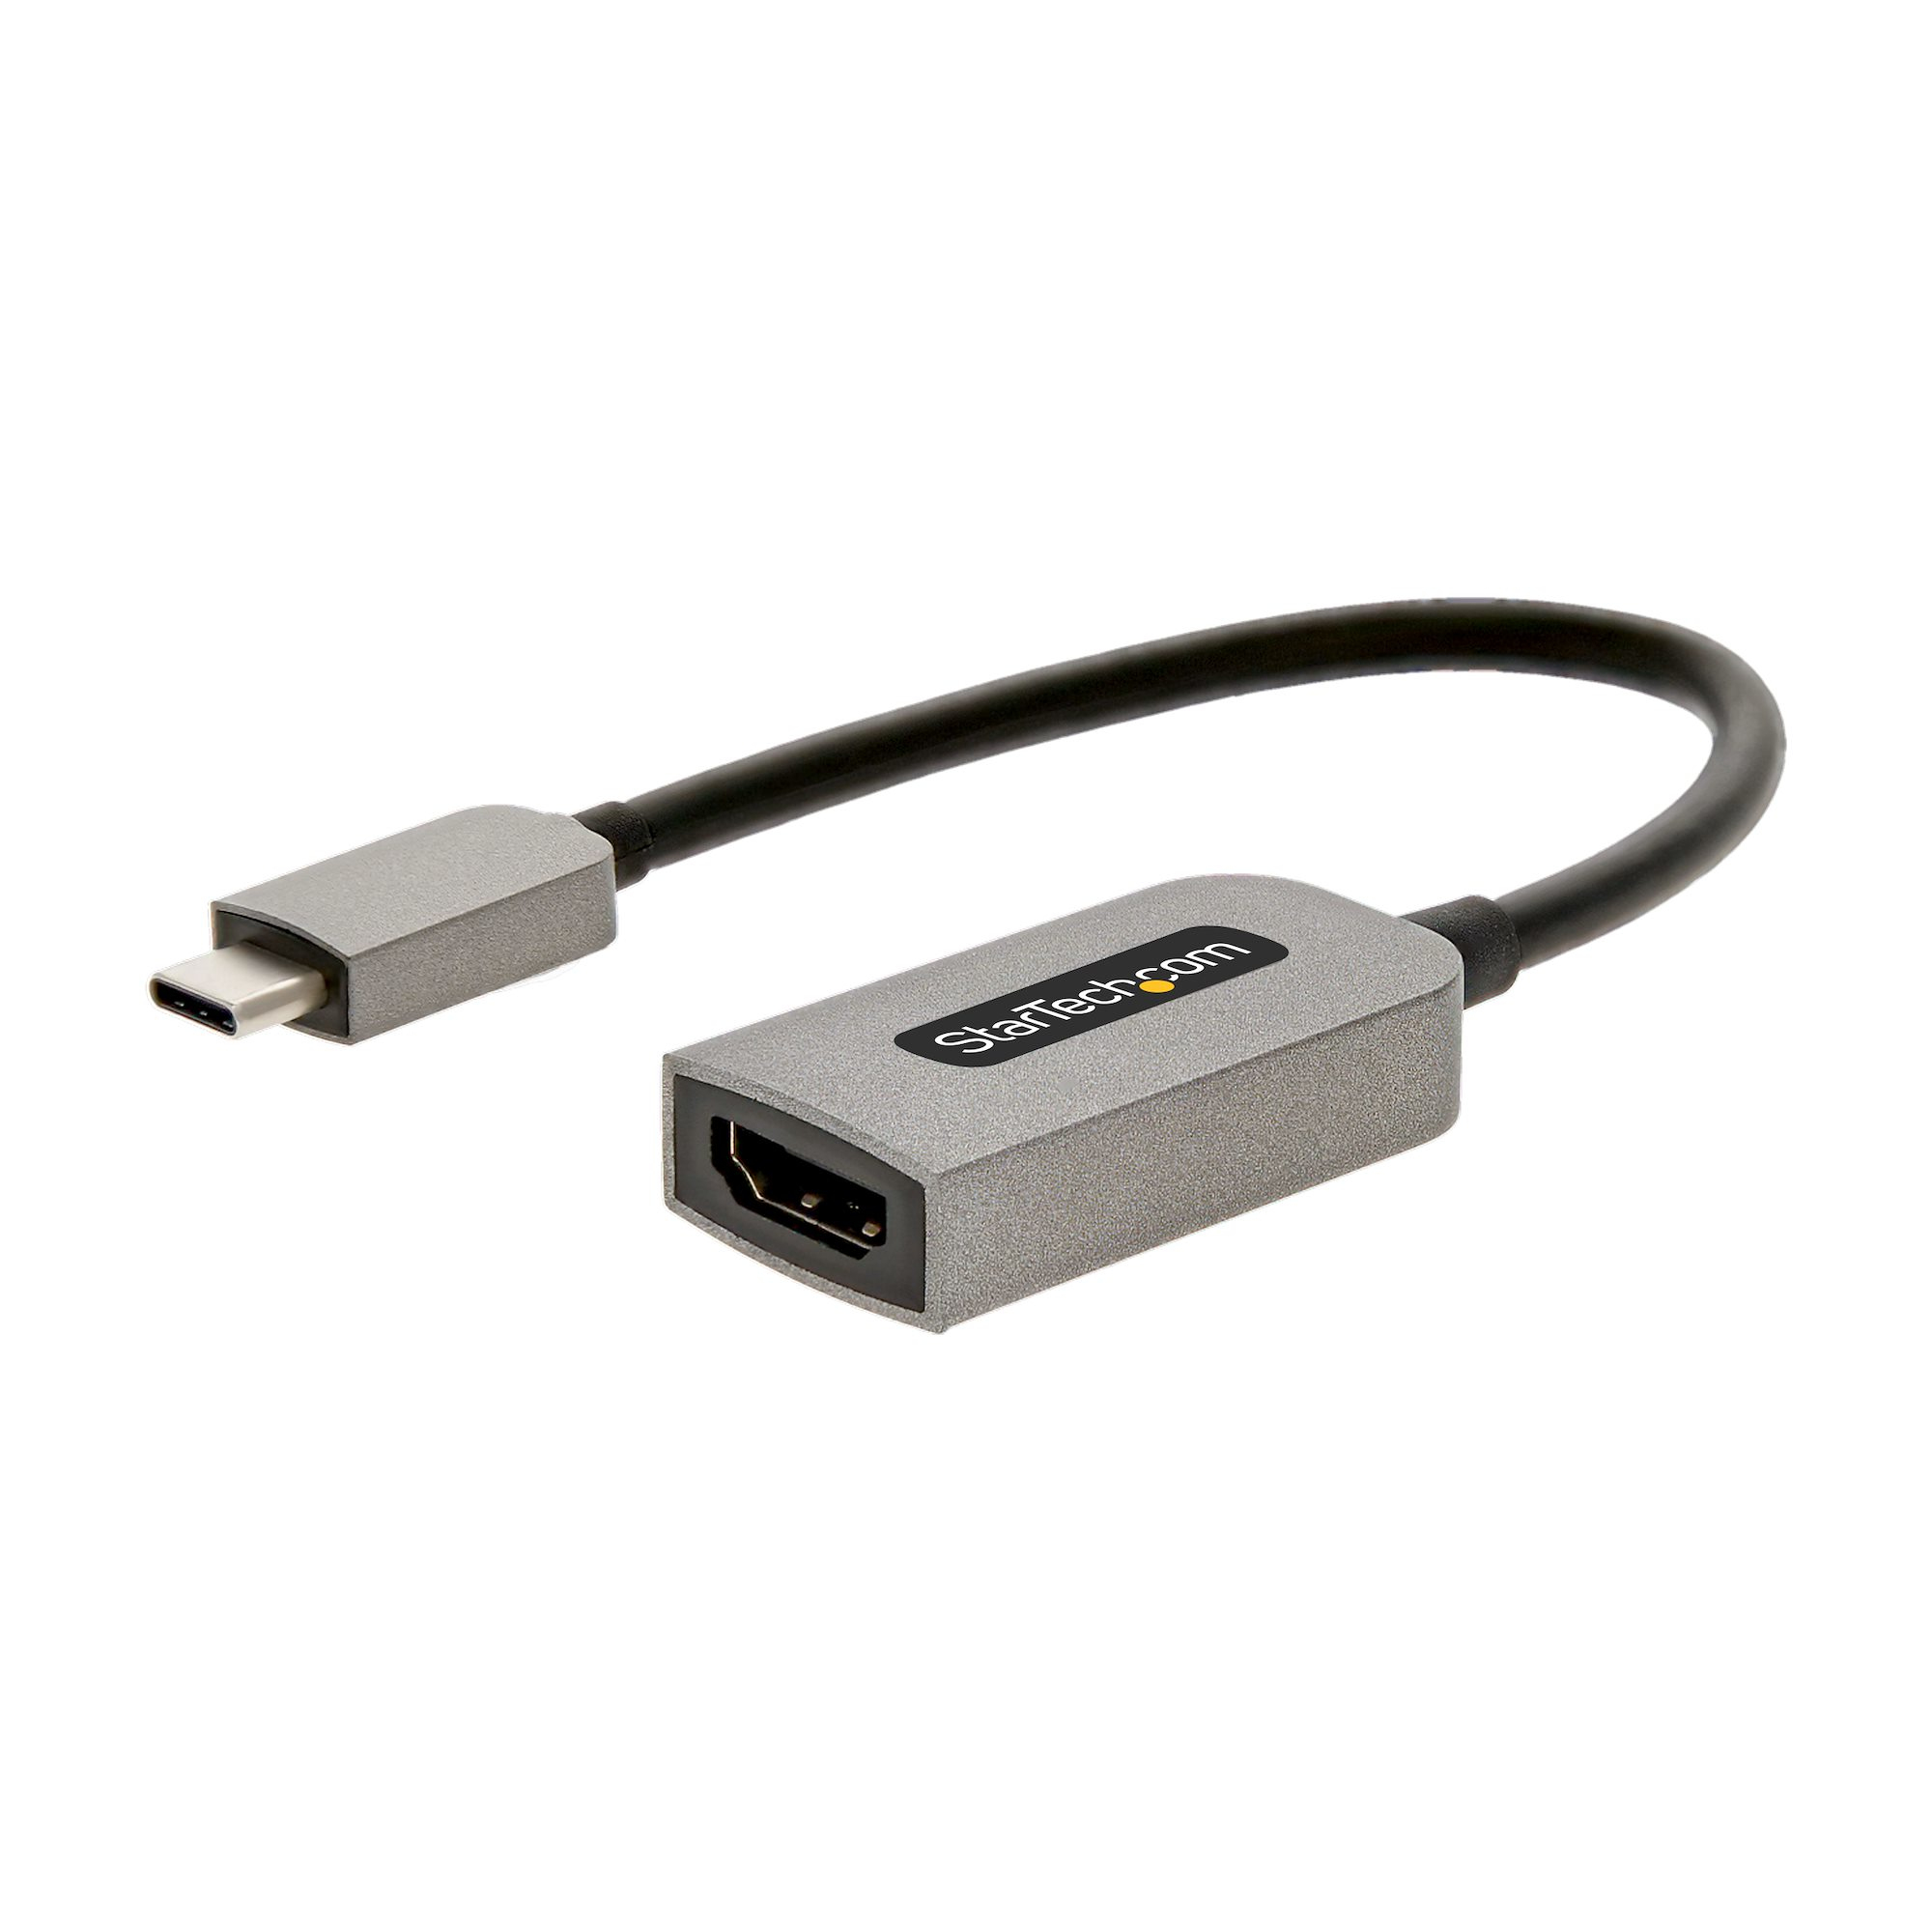 Te voet Kikker Graan StarTech.com USB C naar HDMI Adapter - 4K 60Hz Video, HDR10 - USB-C naar  HDMI 2.0b Adapter Dongle - USB Type-C DP Alt Mode naar HDMI Monitor/Scherm/TV  - USB C naar HDMI